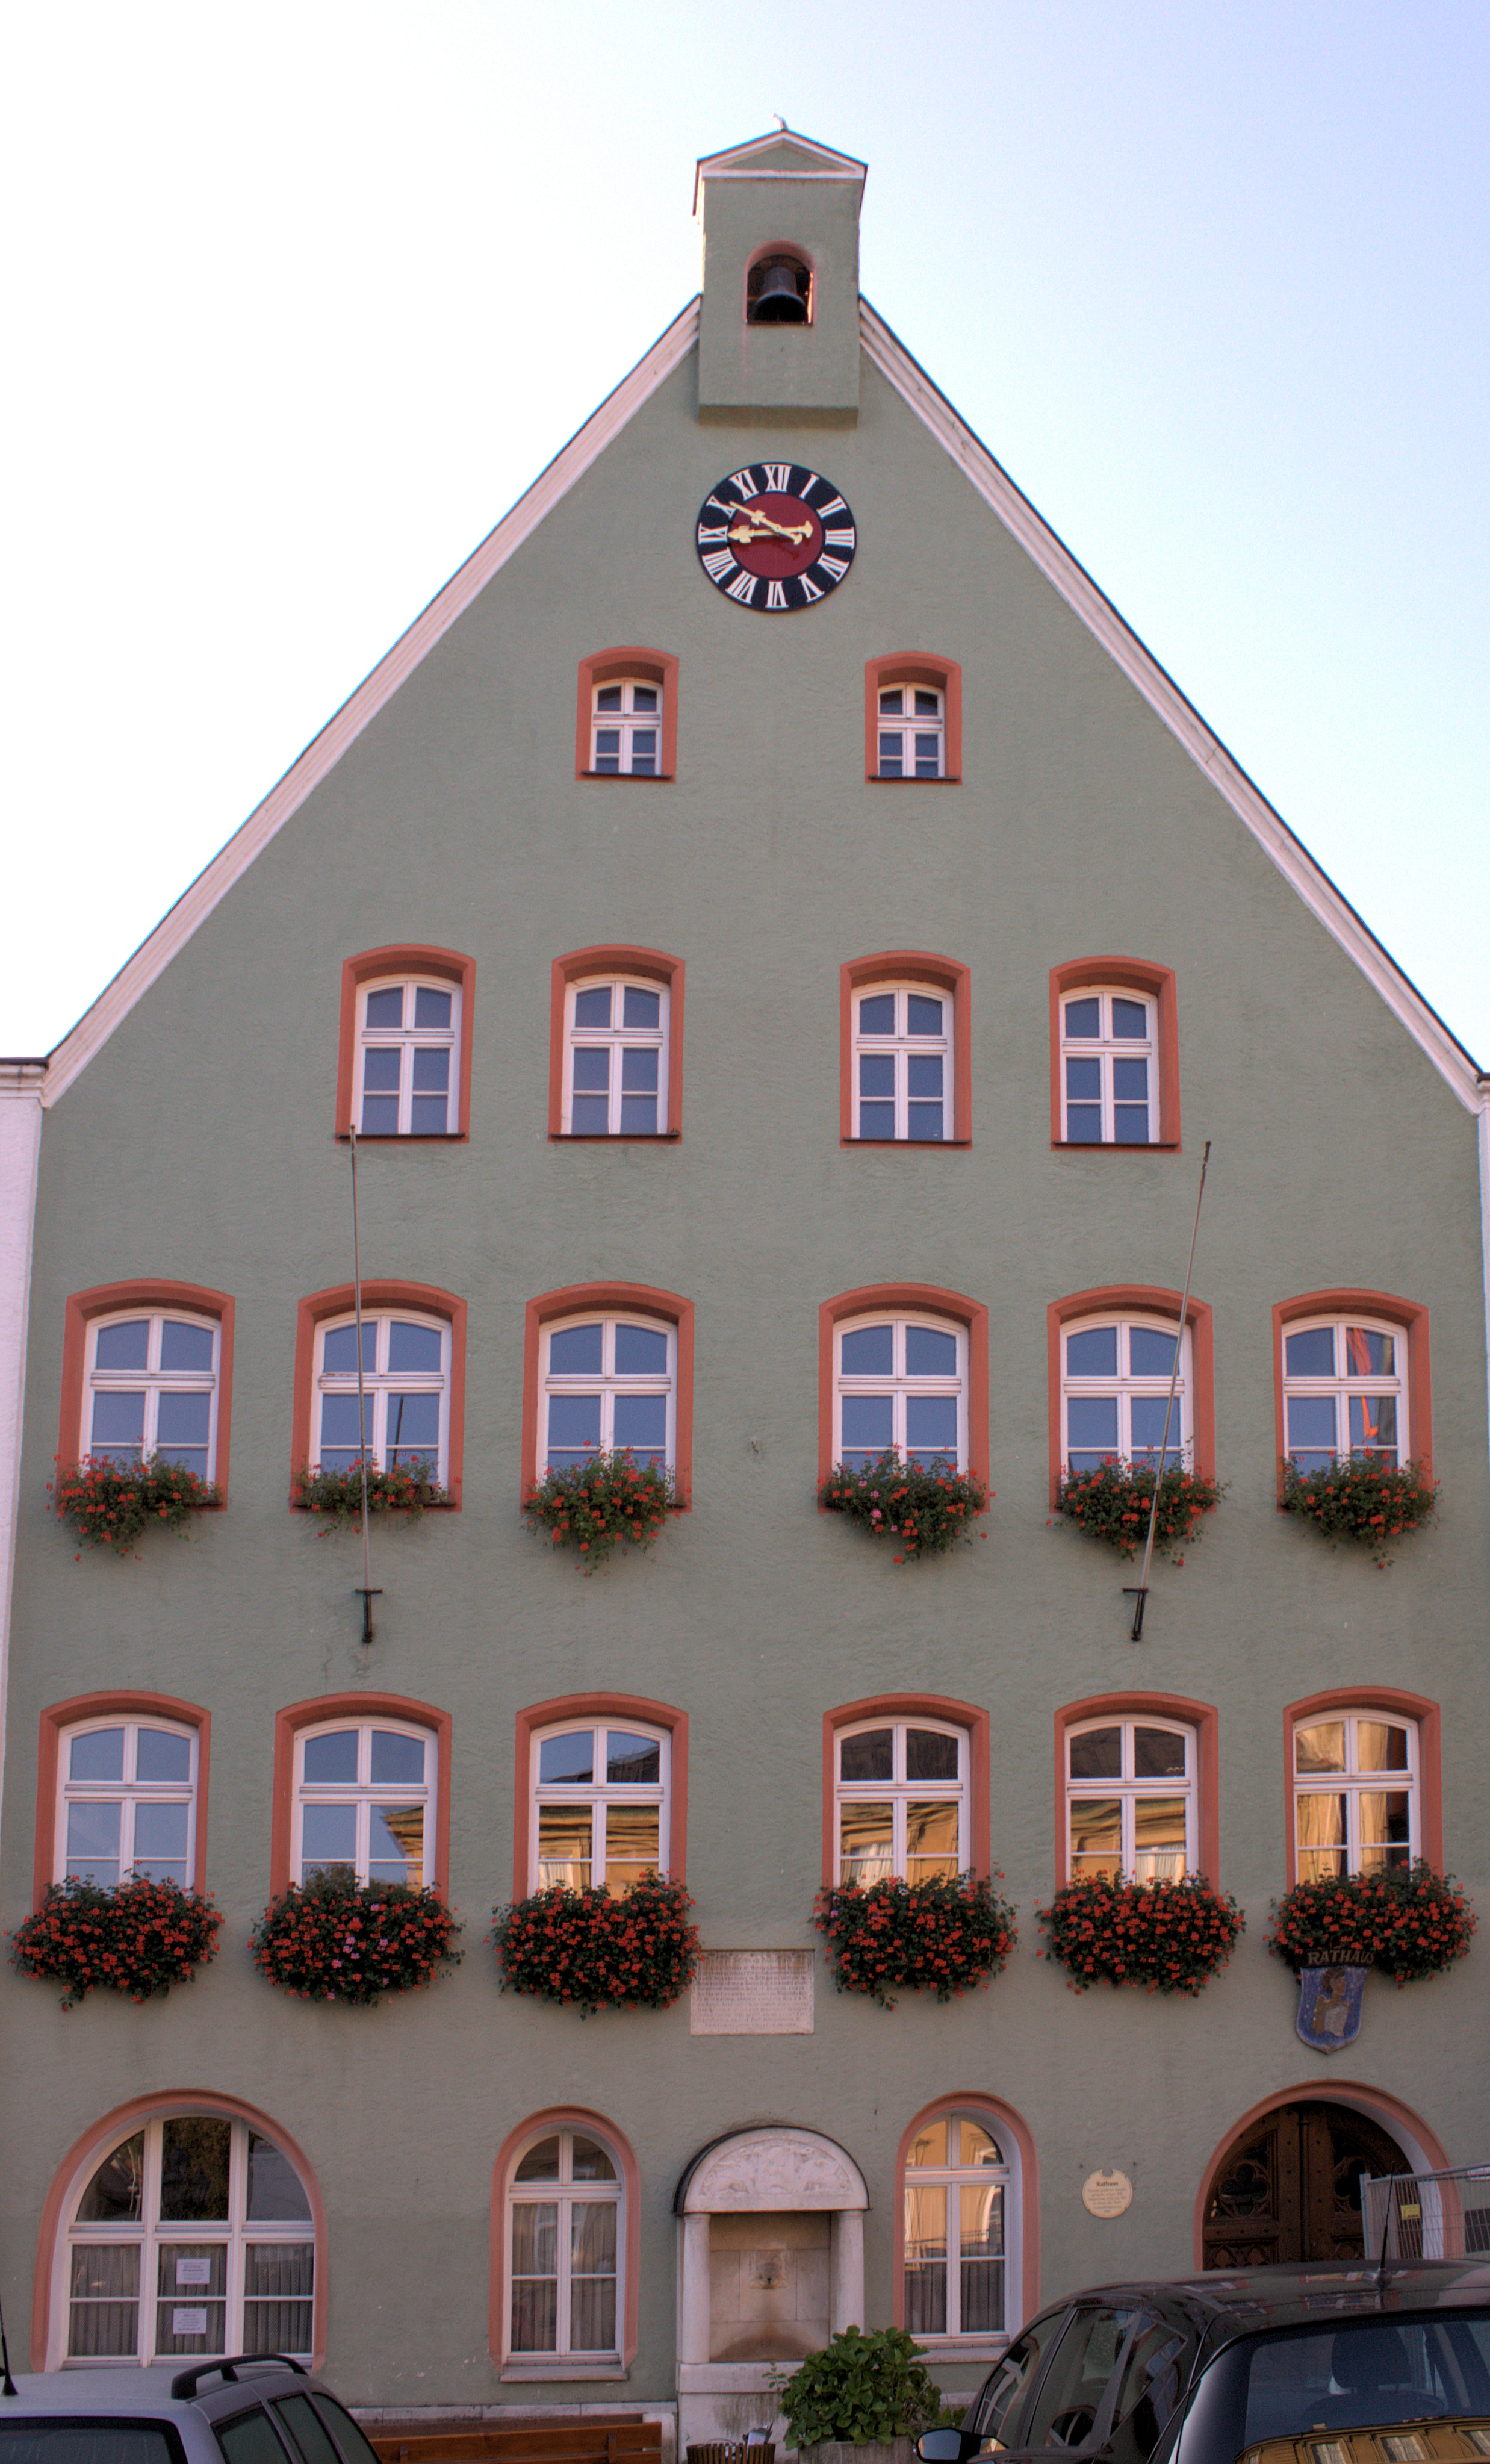 Town hall of Pappenheim, Landkreis Weißenburg-Gunzenhausen, Bavaria, Germany